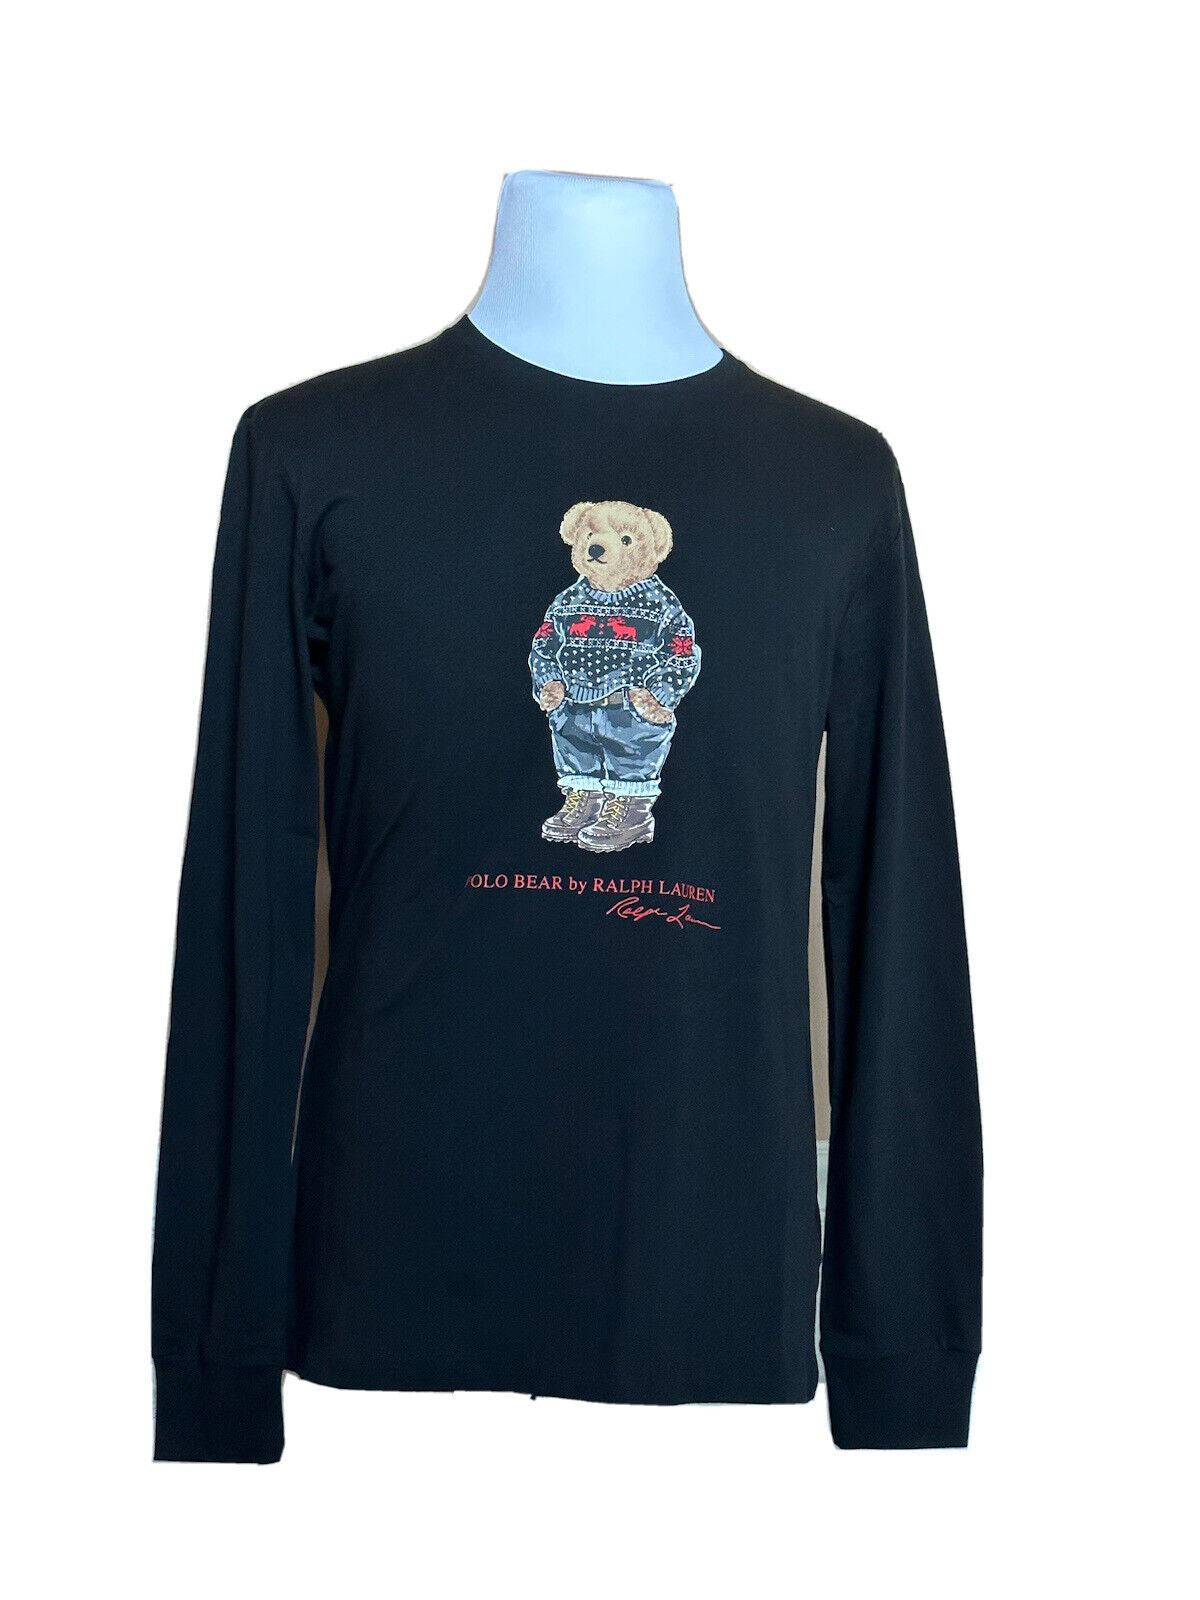 Neu mit Etikett: 79,50 $ Polo Ralph Lauren Langarm-T-Shirt mit Bärenmotiv, Schwarz, 2XL 